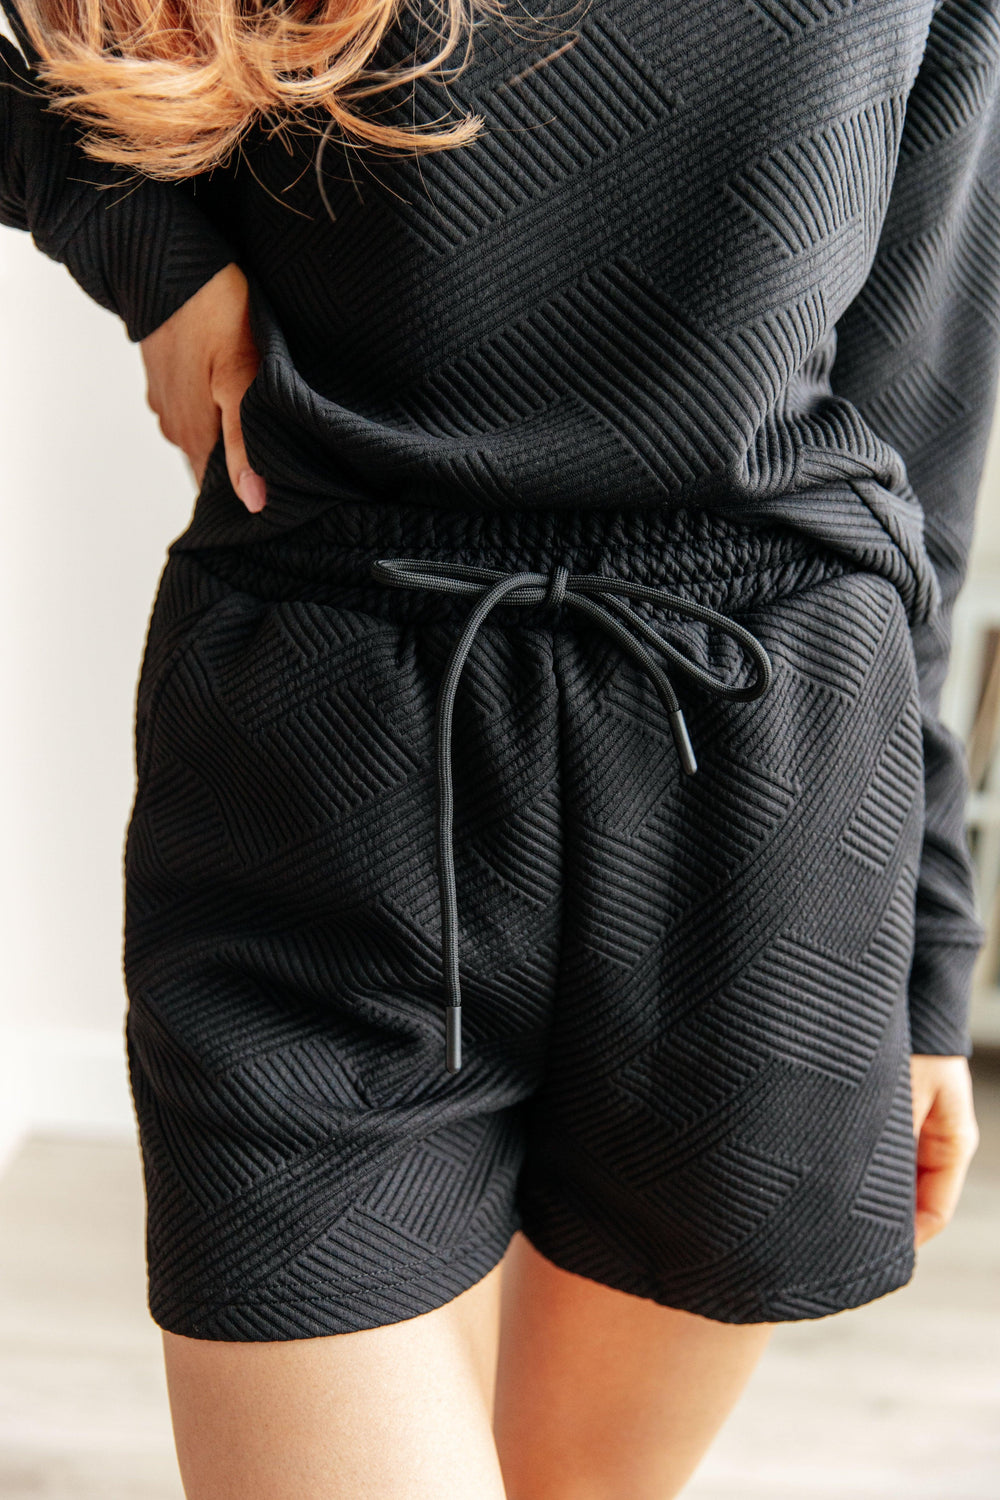 Textured Black Sweatshirt and Shorts Set Shorts Sets